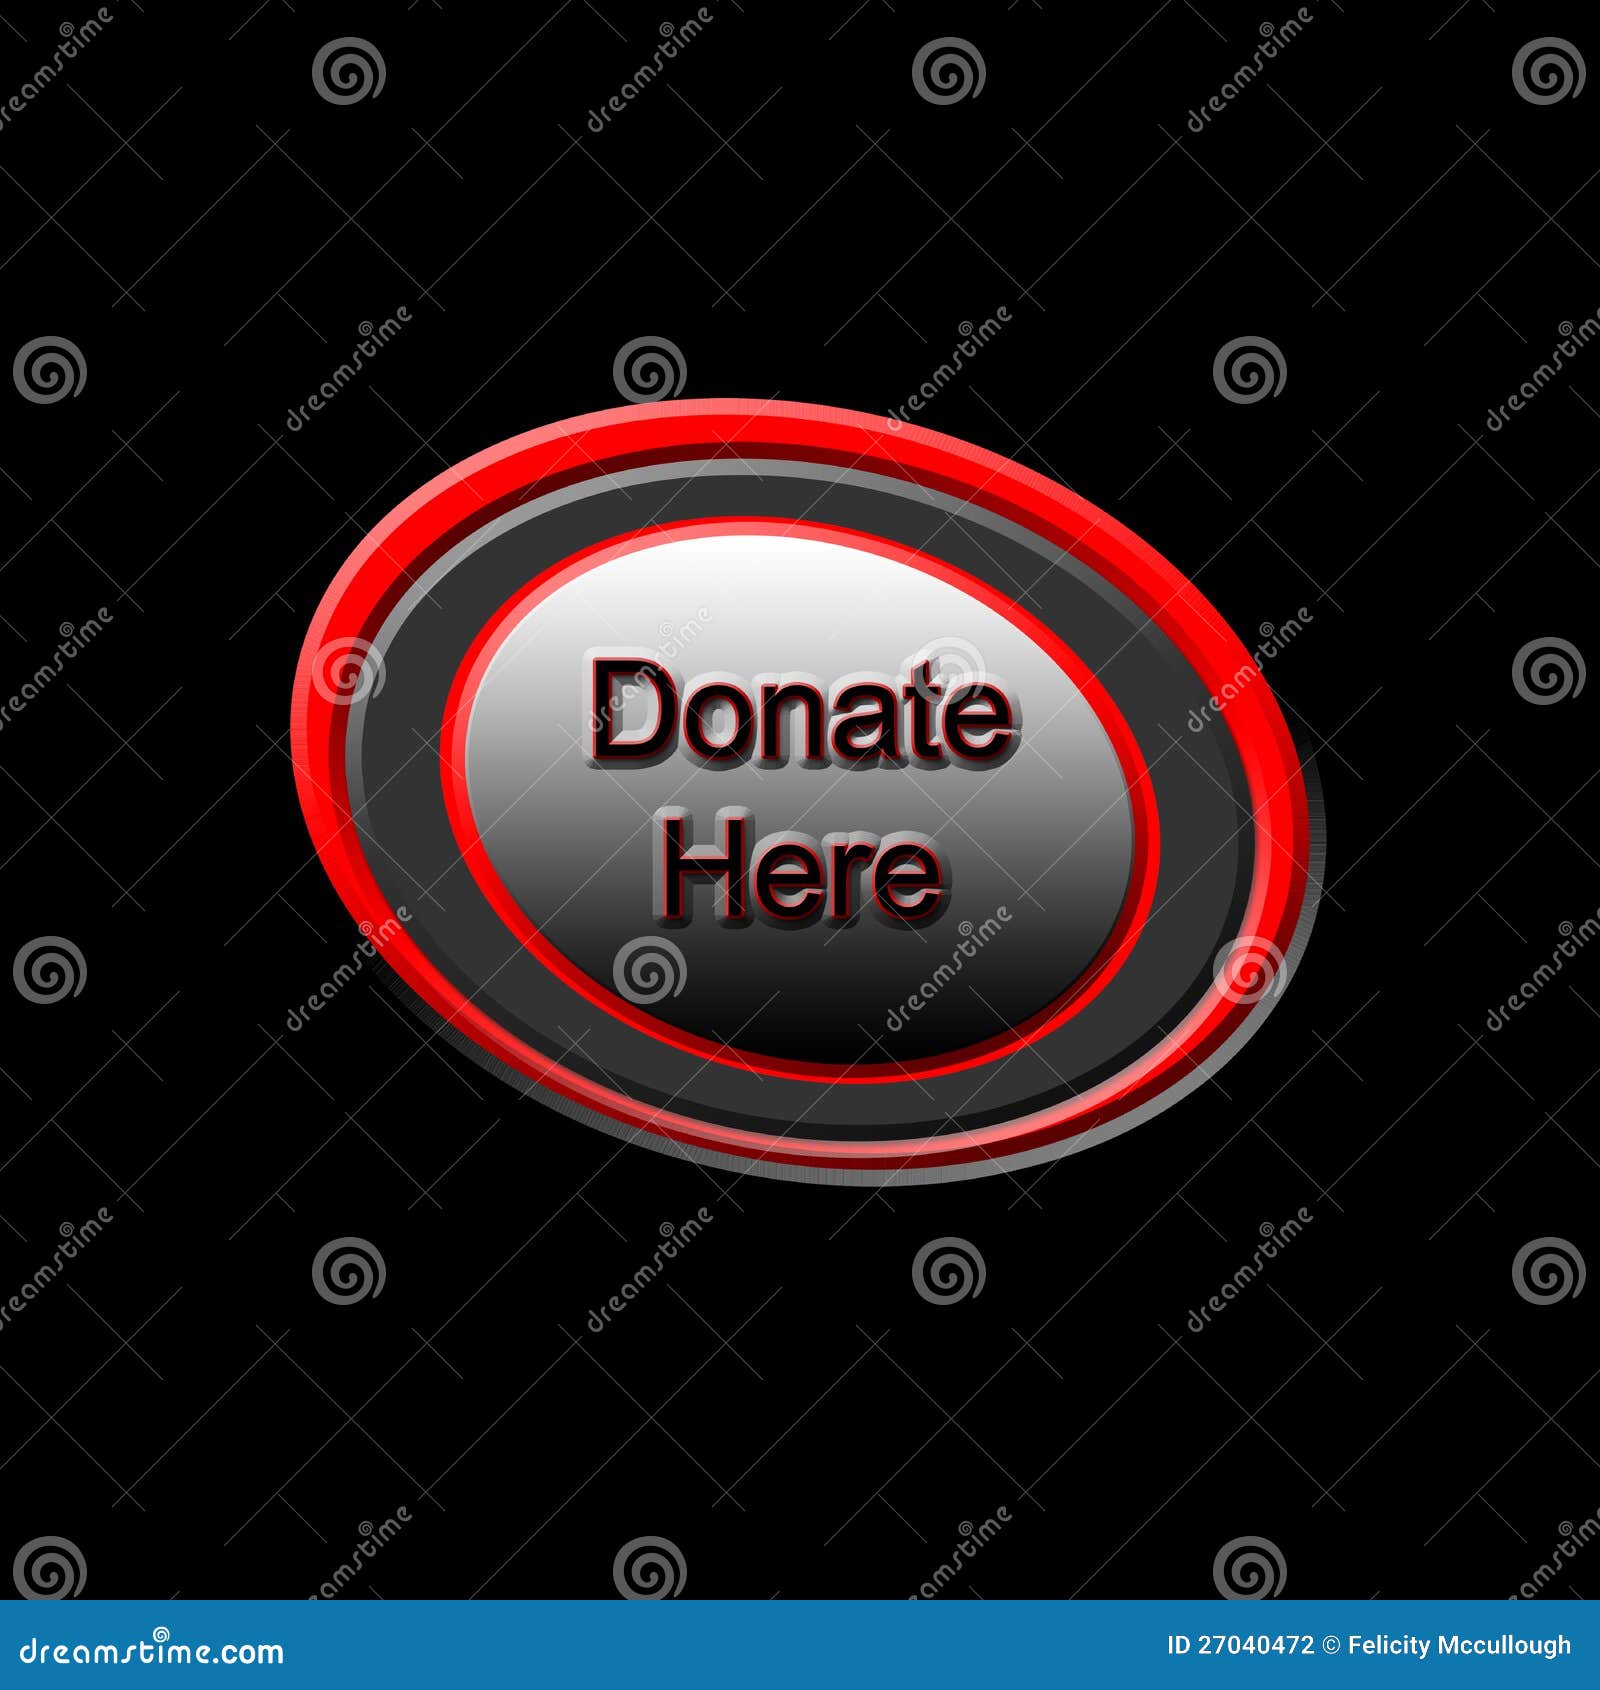 donate here button